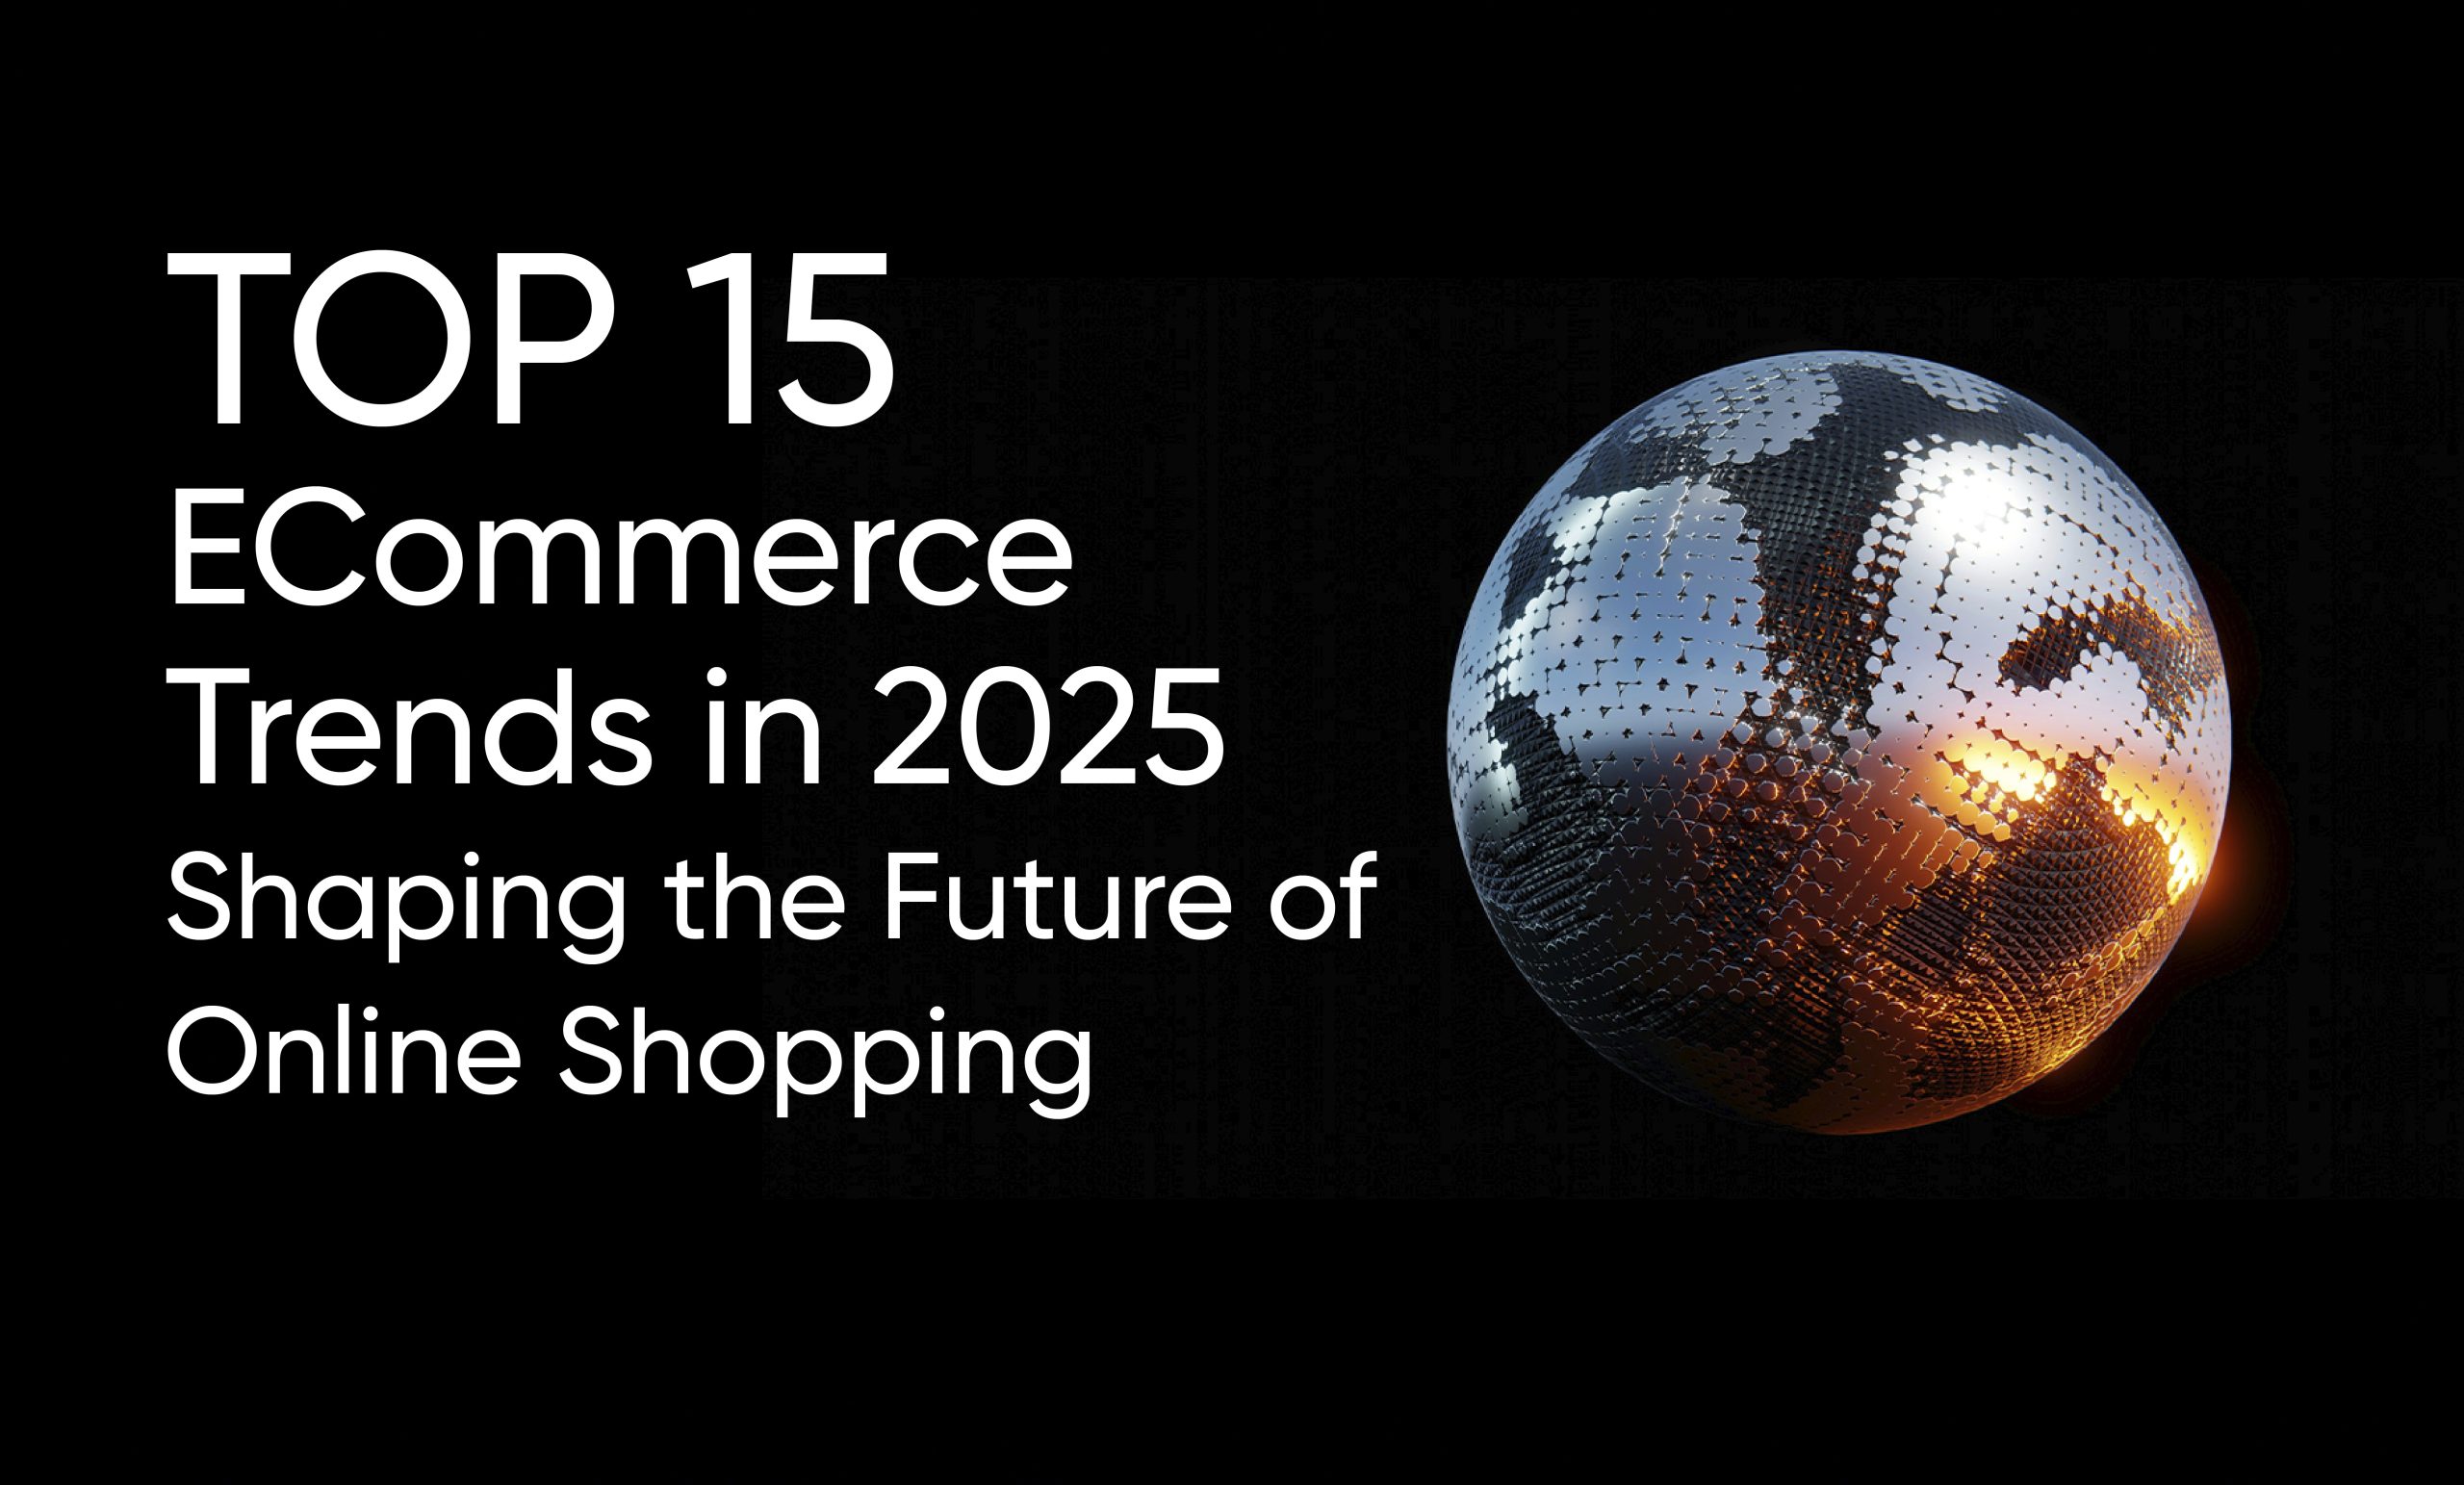 Top eCommerce Trends in 2025